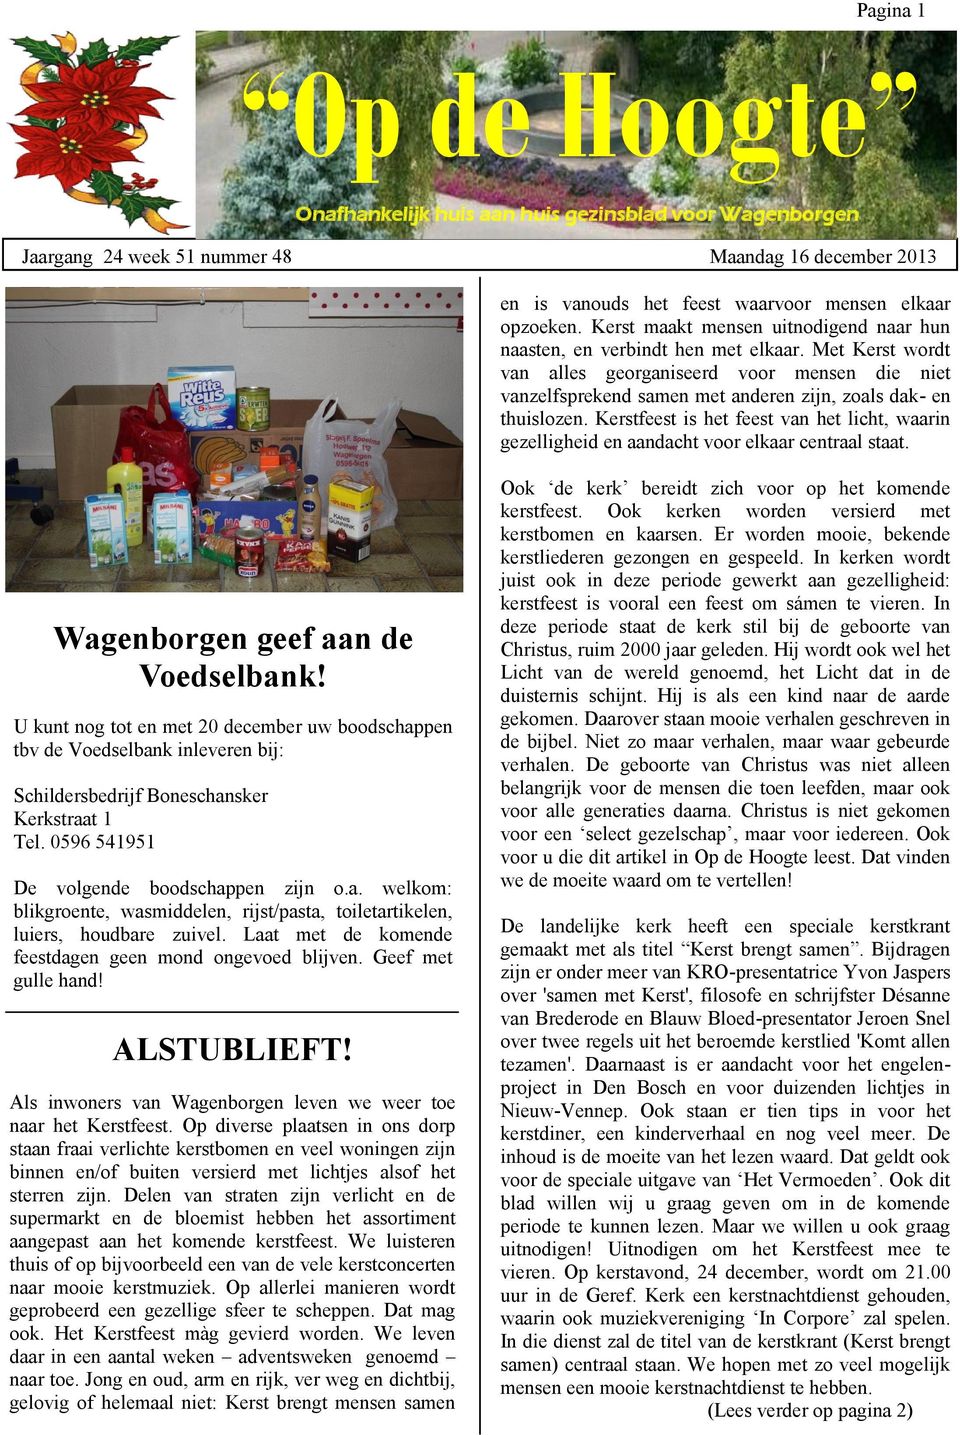 onafhankelijk weekblad, webmagazine, Op de Hoogte, dorpskrant voor Wagenborgen, onafhankelijk weekblad, webmagazine, Op de Hoogte, dorpskrant voor Wagenborgen, onafhankelijk weekblad, webmagazine, Op